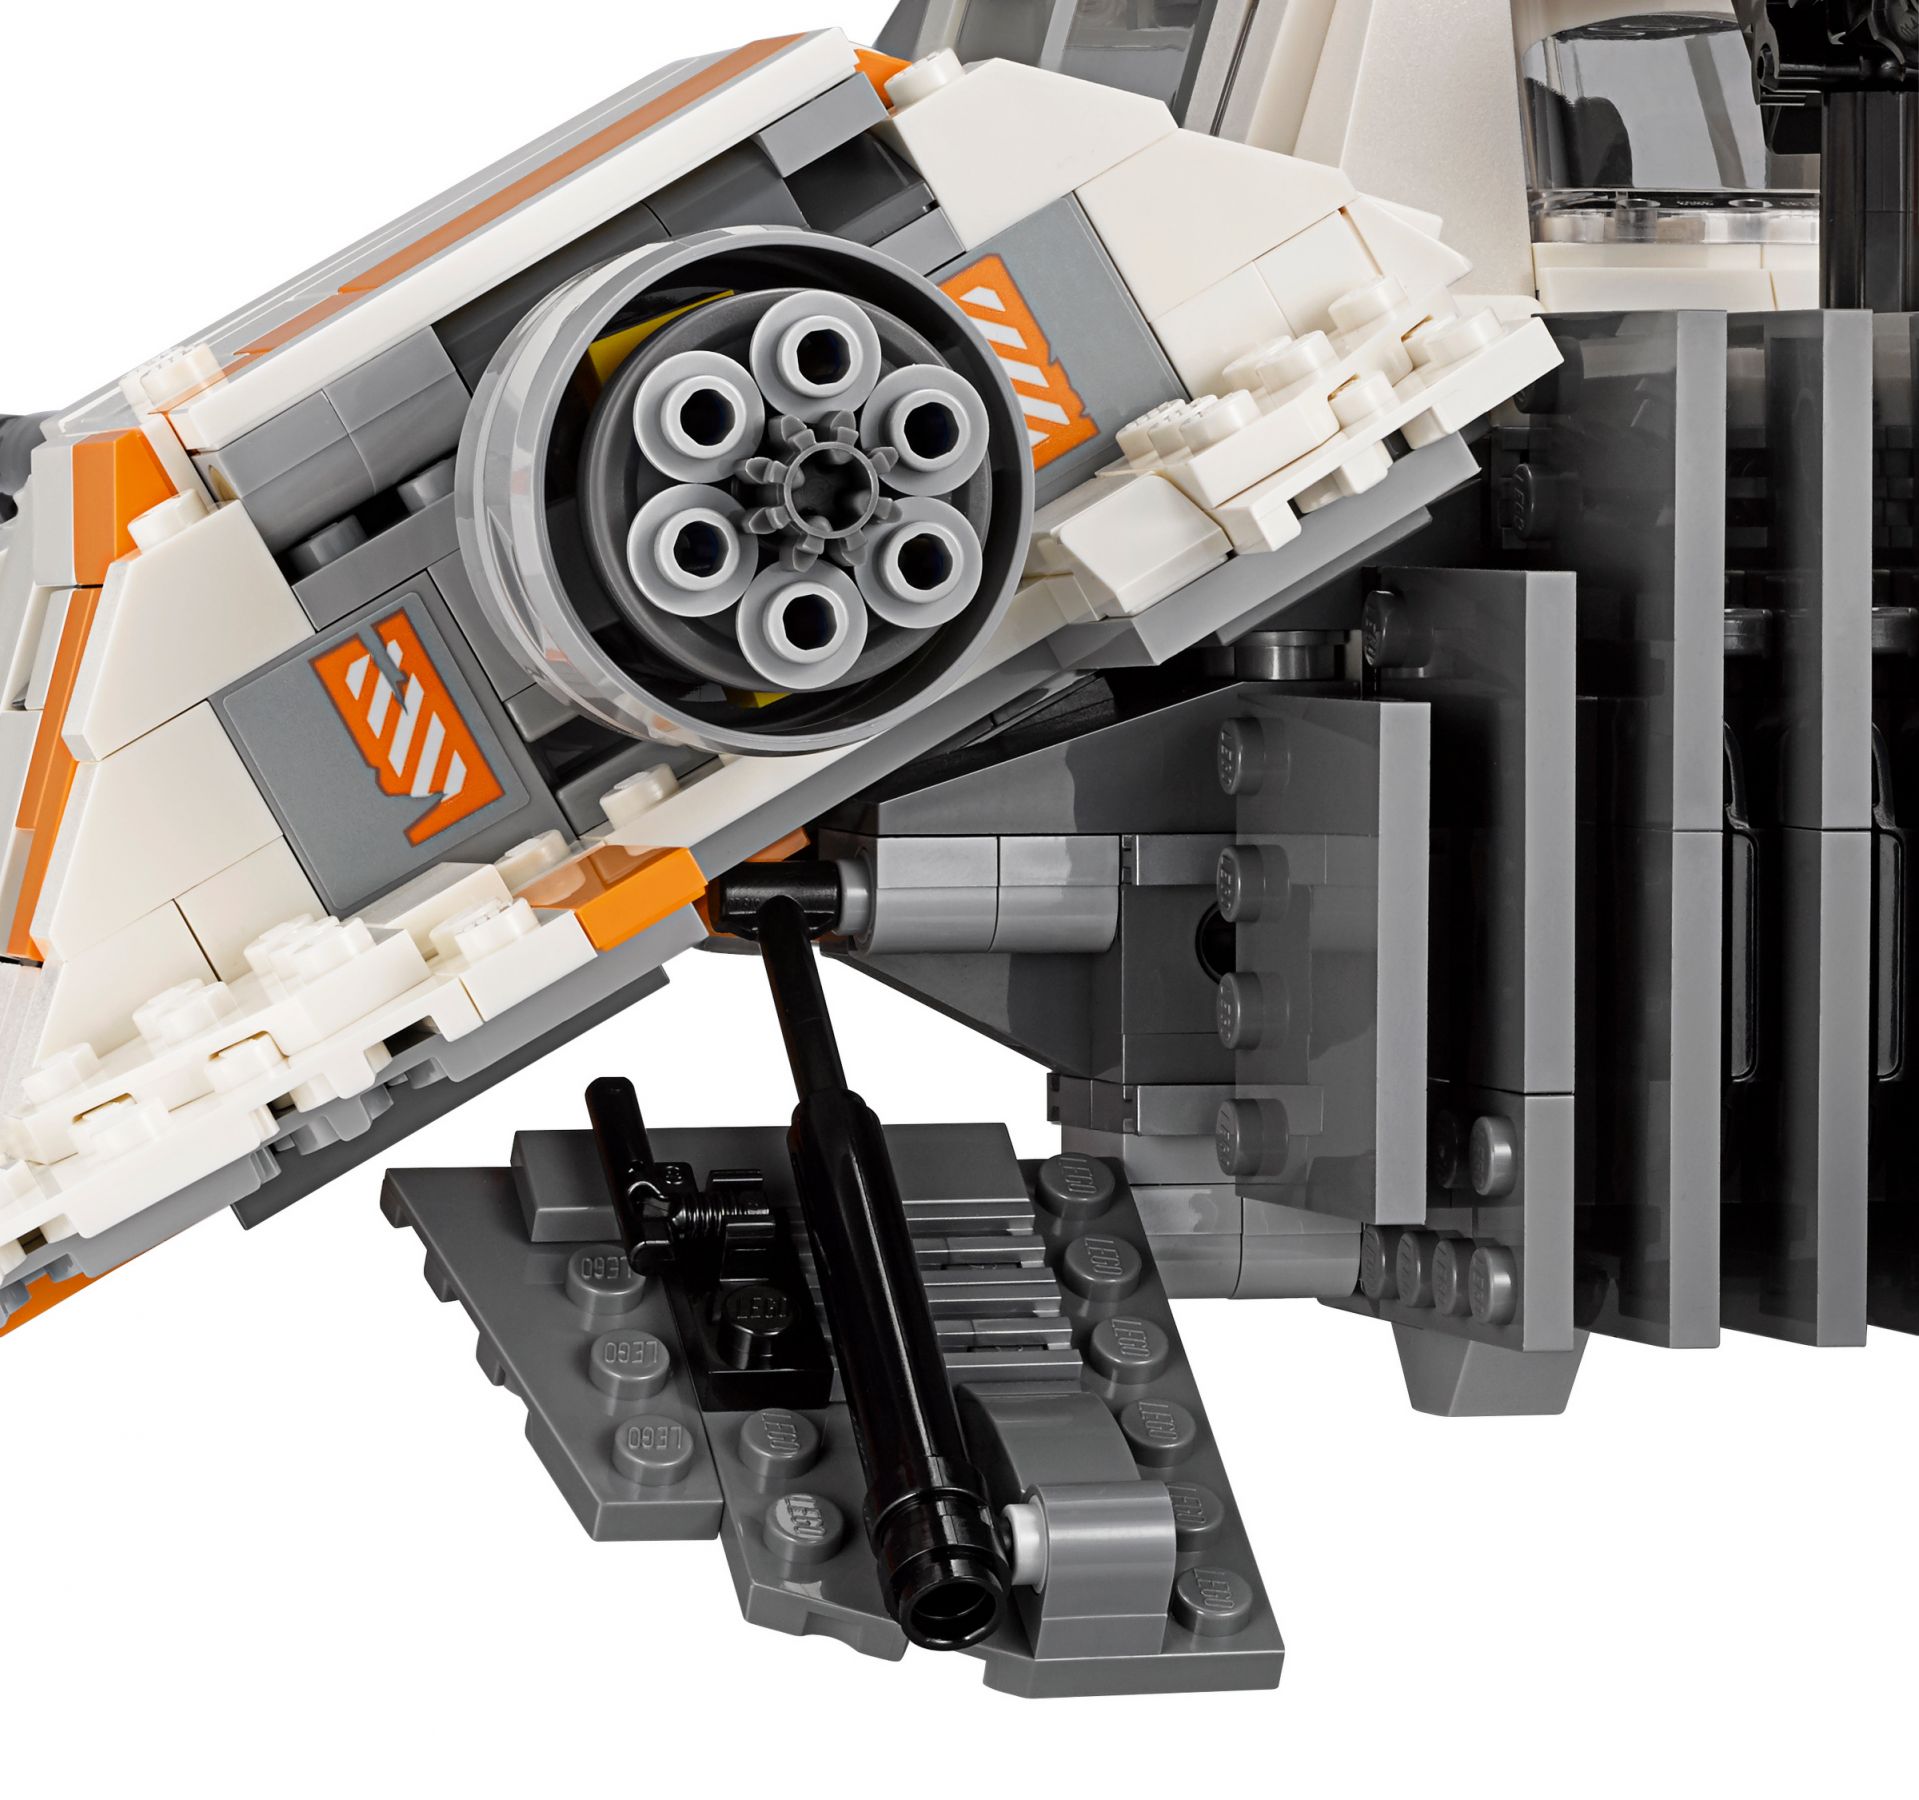 LEGO Star Wars 75144 Snowspeeder™ LEGO_75144_alt11.jpg